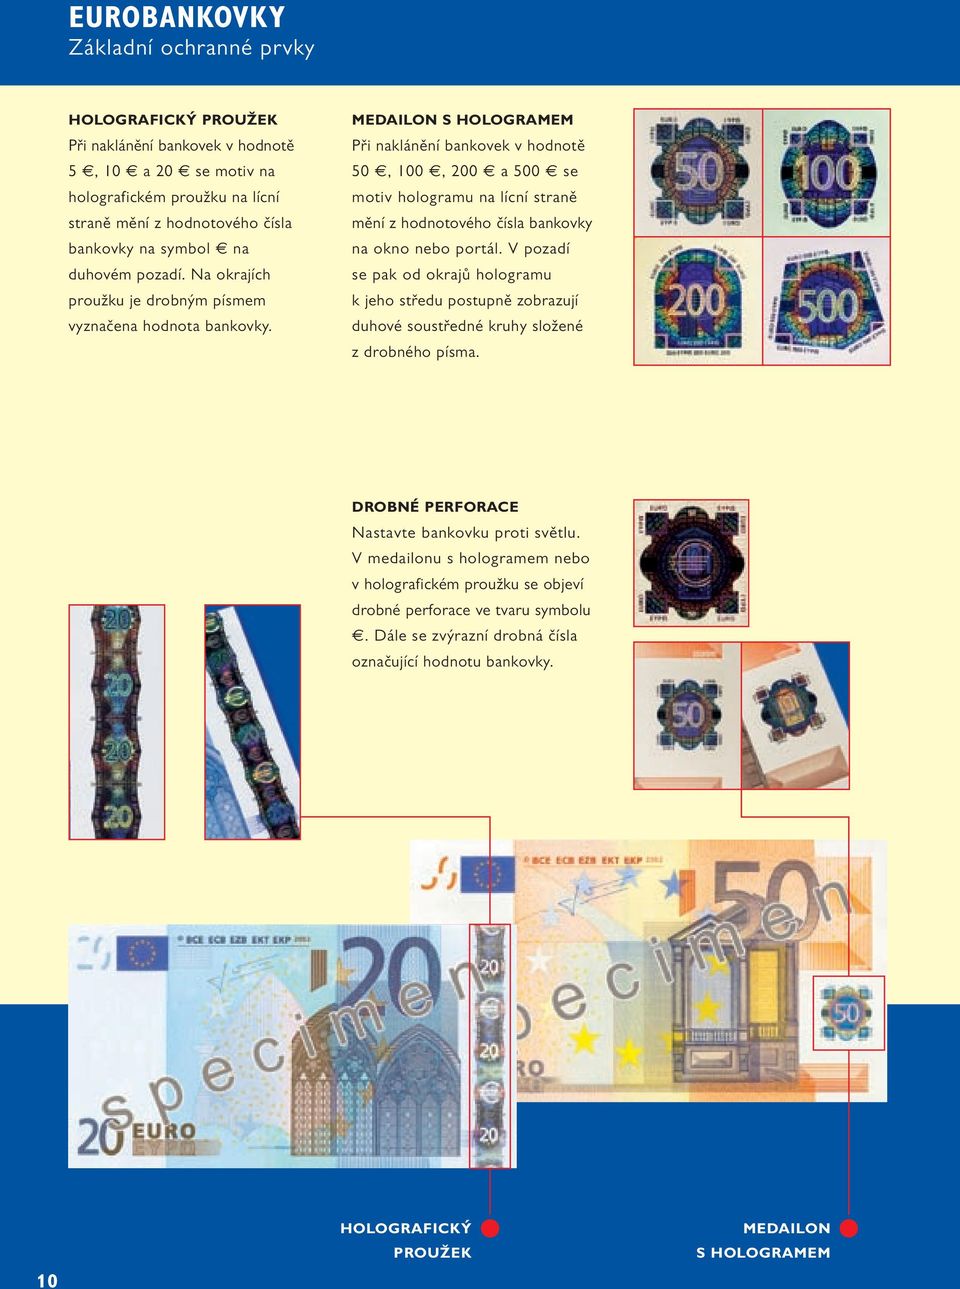 MEDAILON S HOLOGRAMEM Při naklánění bankovek v hodnotě 50, 100, 200 a 500 se motiv hologramu na lícní straně mění z hodnotového čísla bankovky na okno nebo portál.